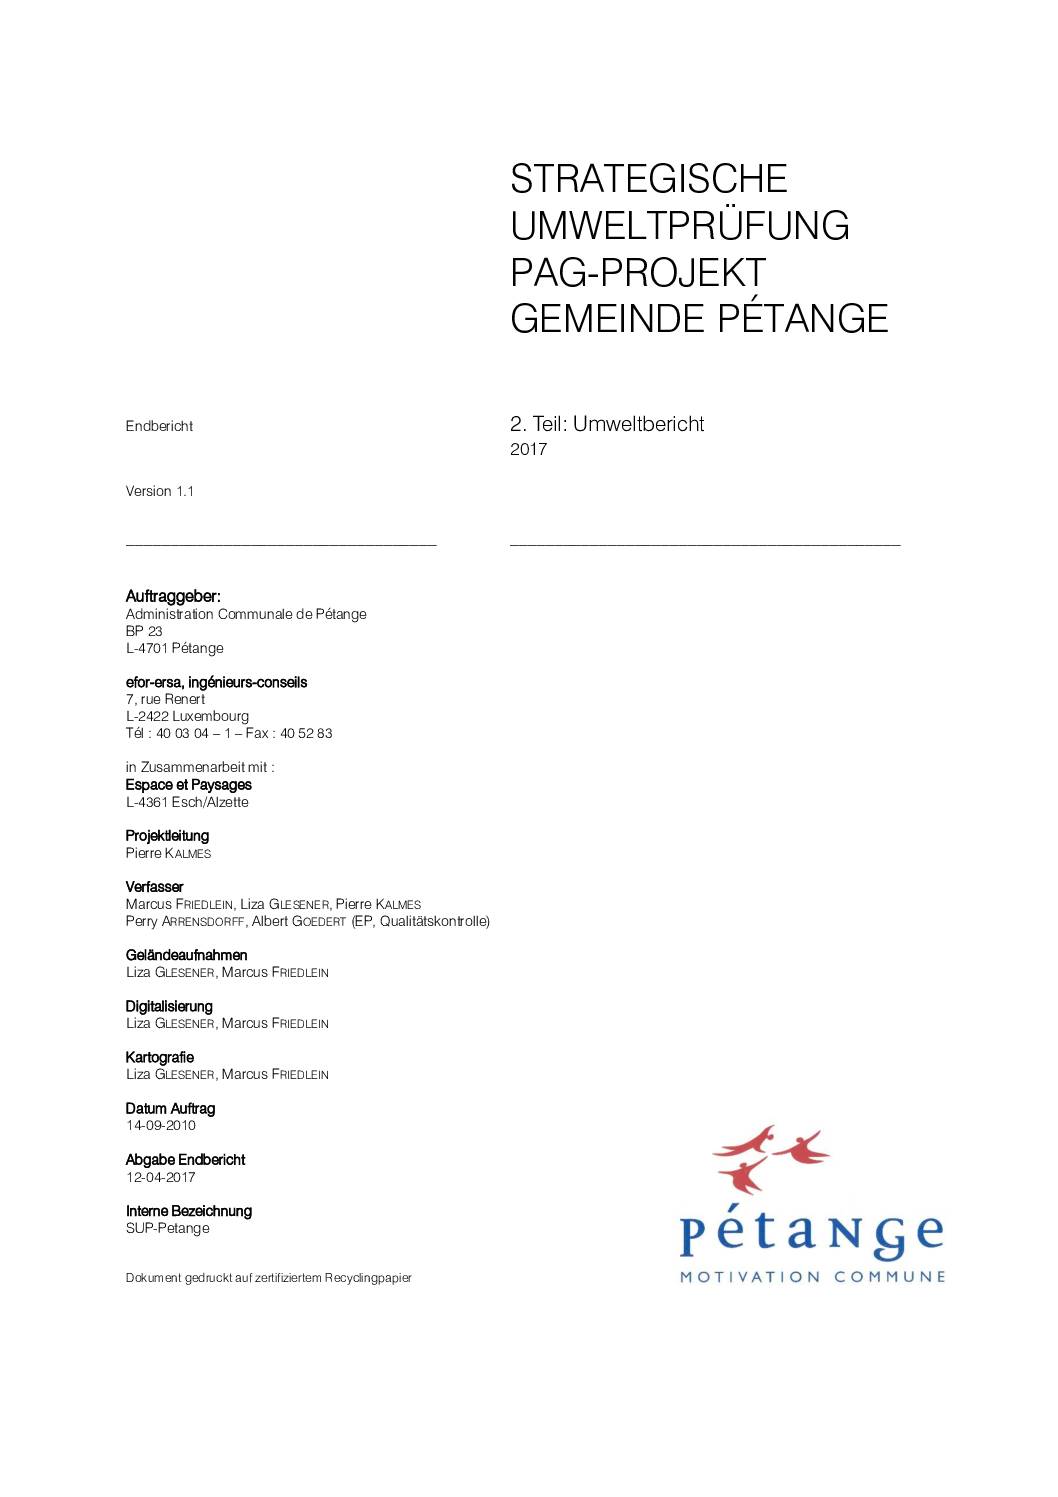 PAG - Strategische Umweltprüfung (Endbericht)